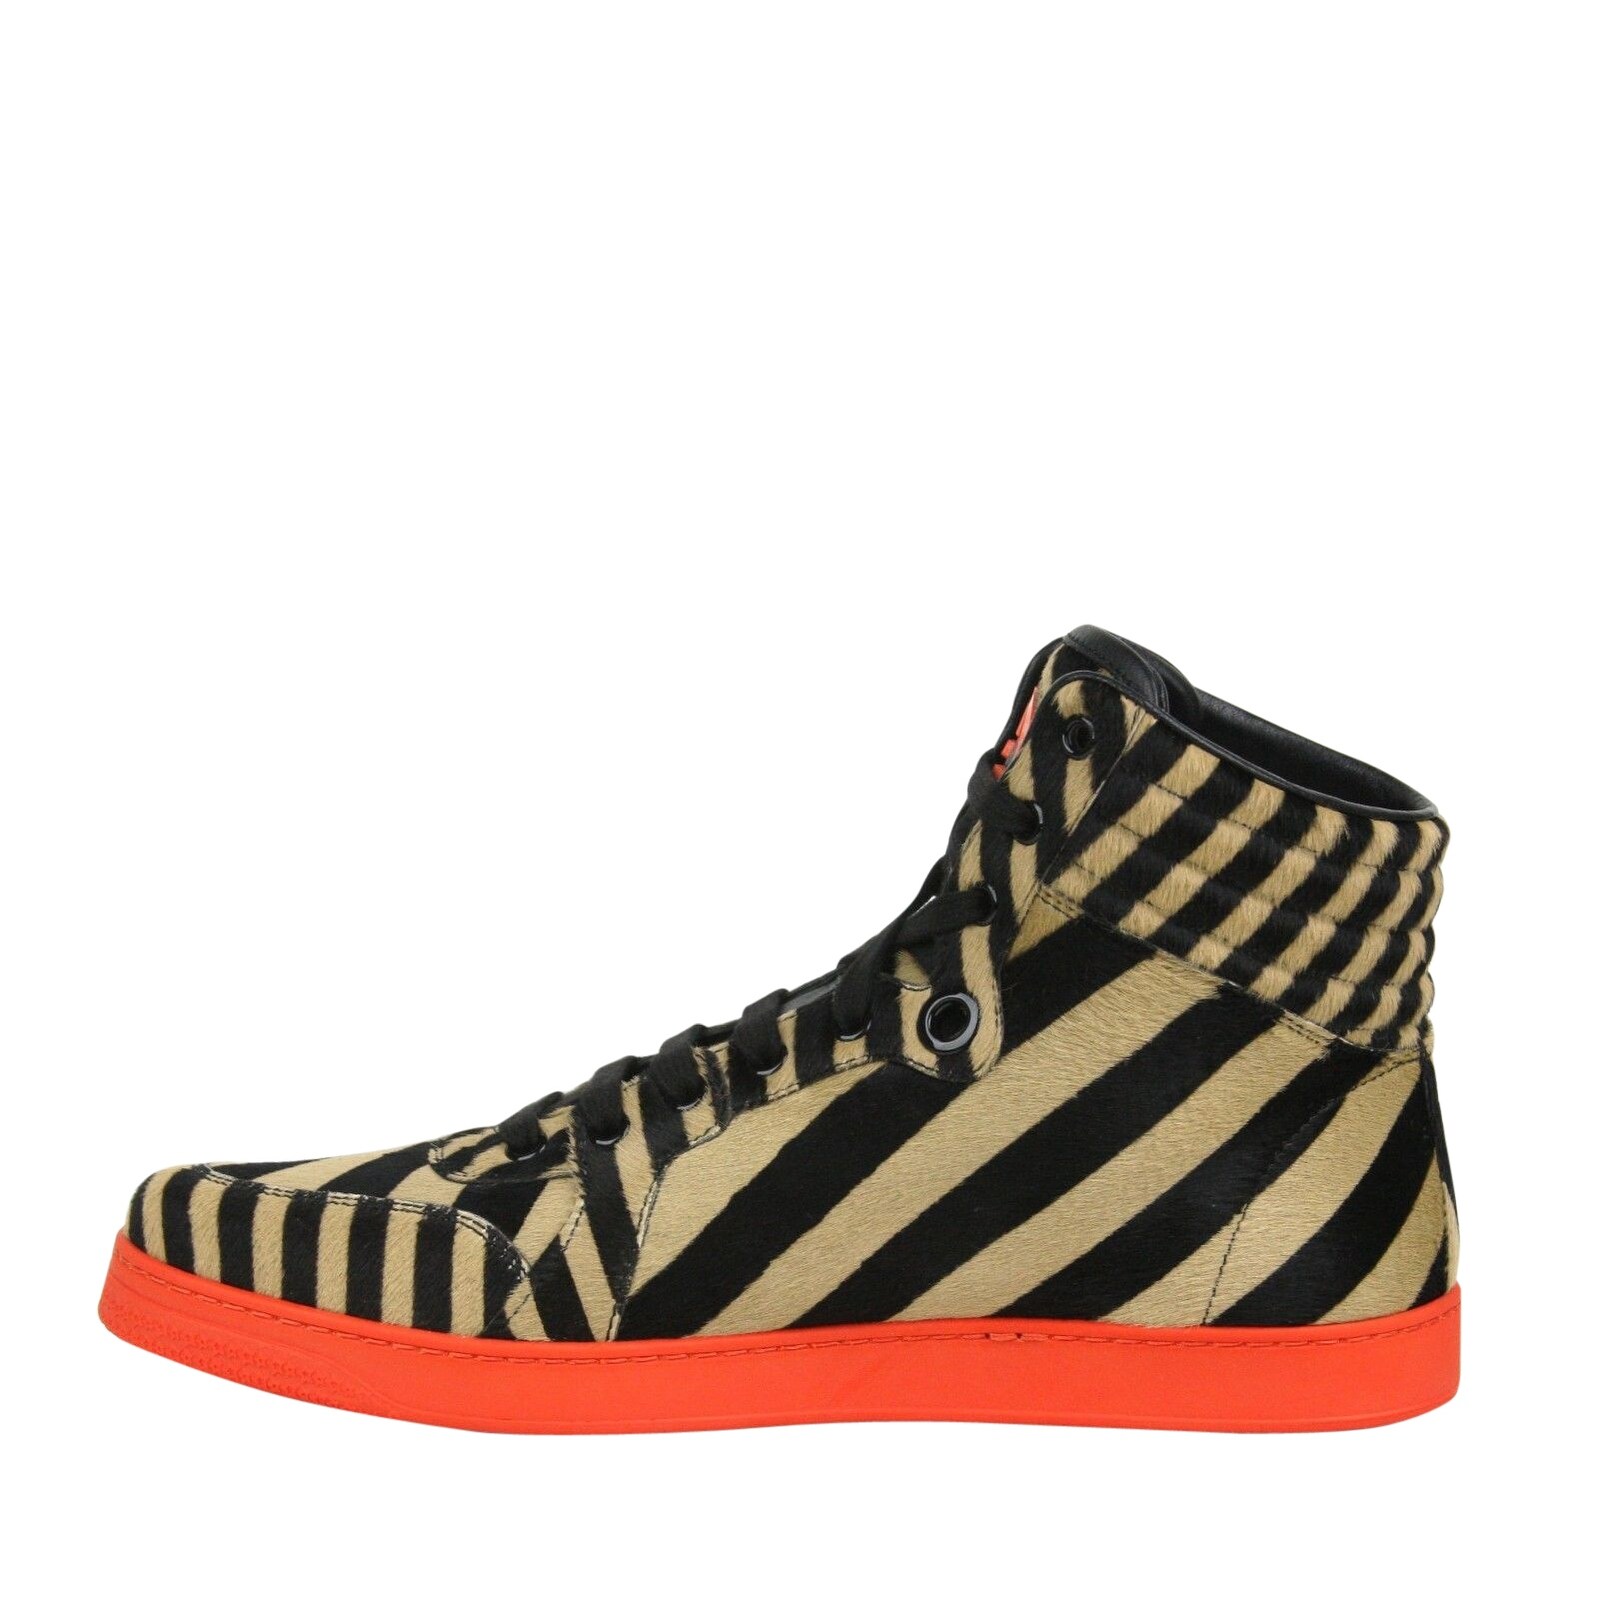 gucci zebra sneakers